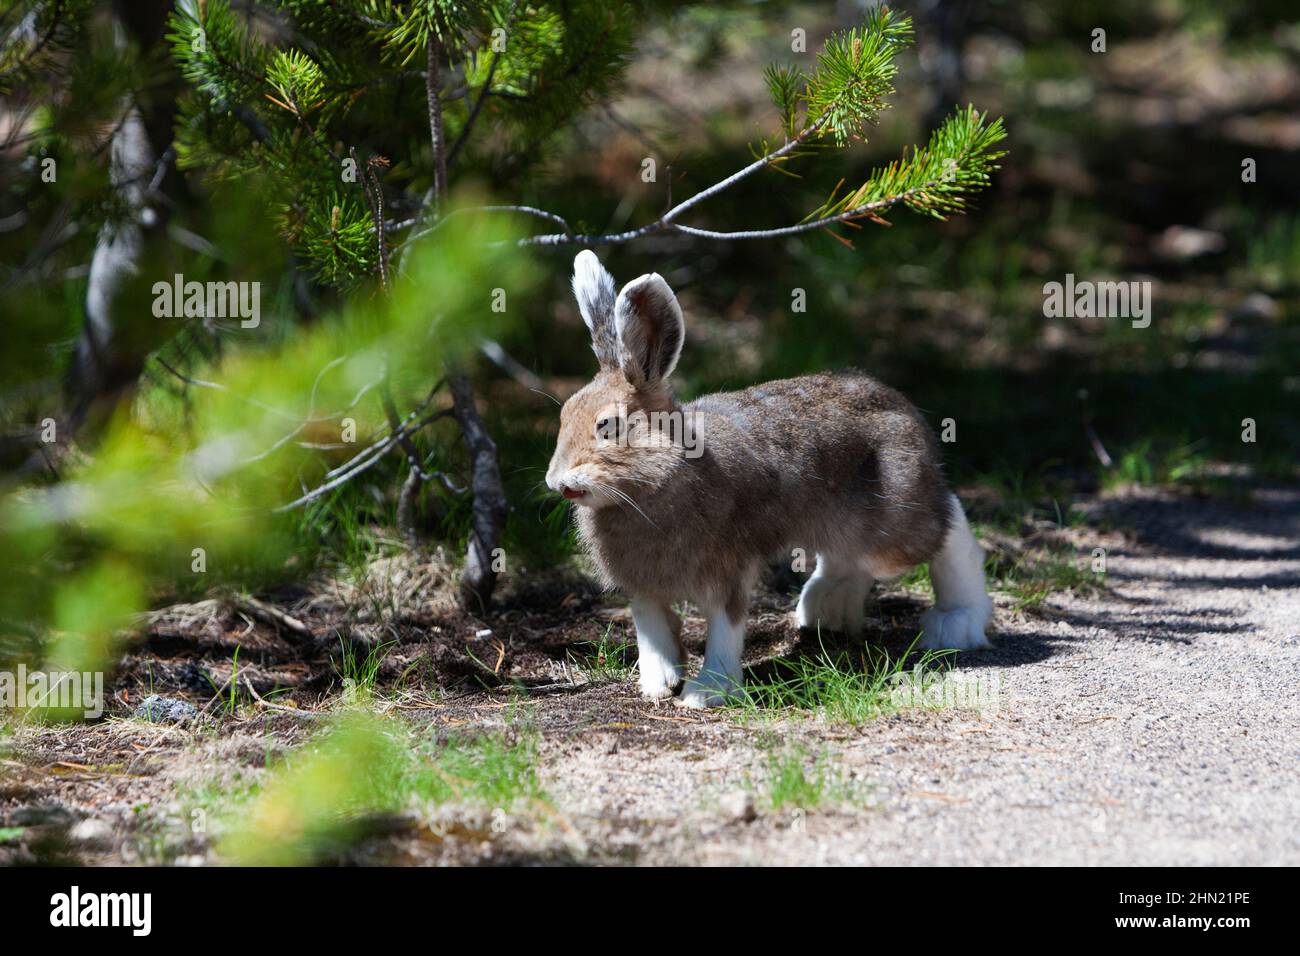 Racchette da neve Hare (Lepus americanus) in estate, buck preso profumo di femmina del cervo, Yellowstone NP, Wyoming, USA Foto Stock